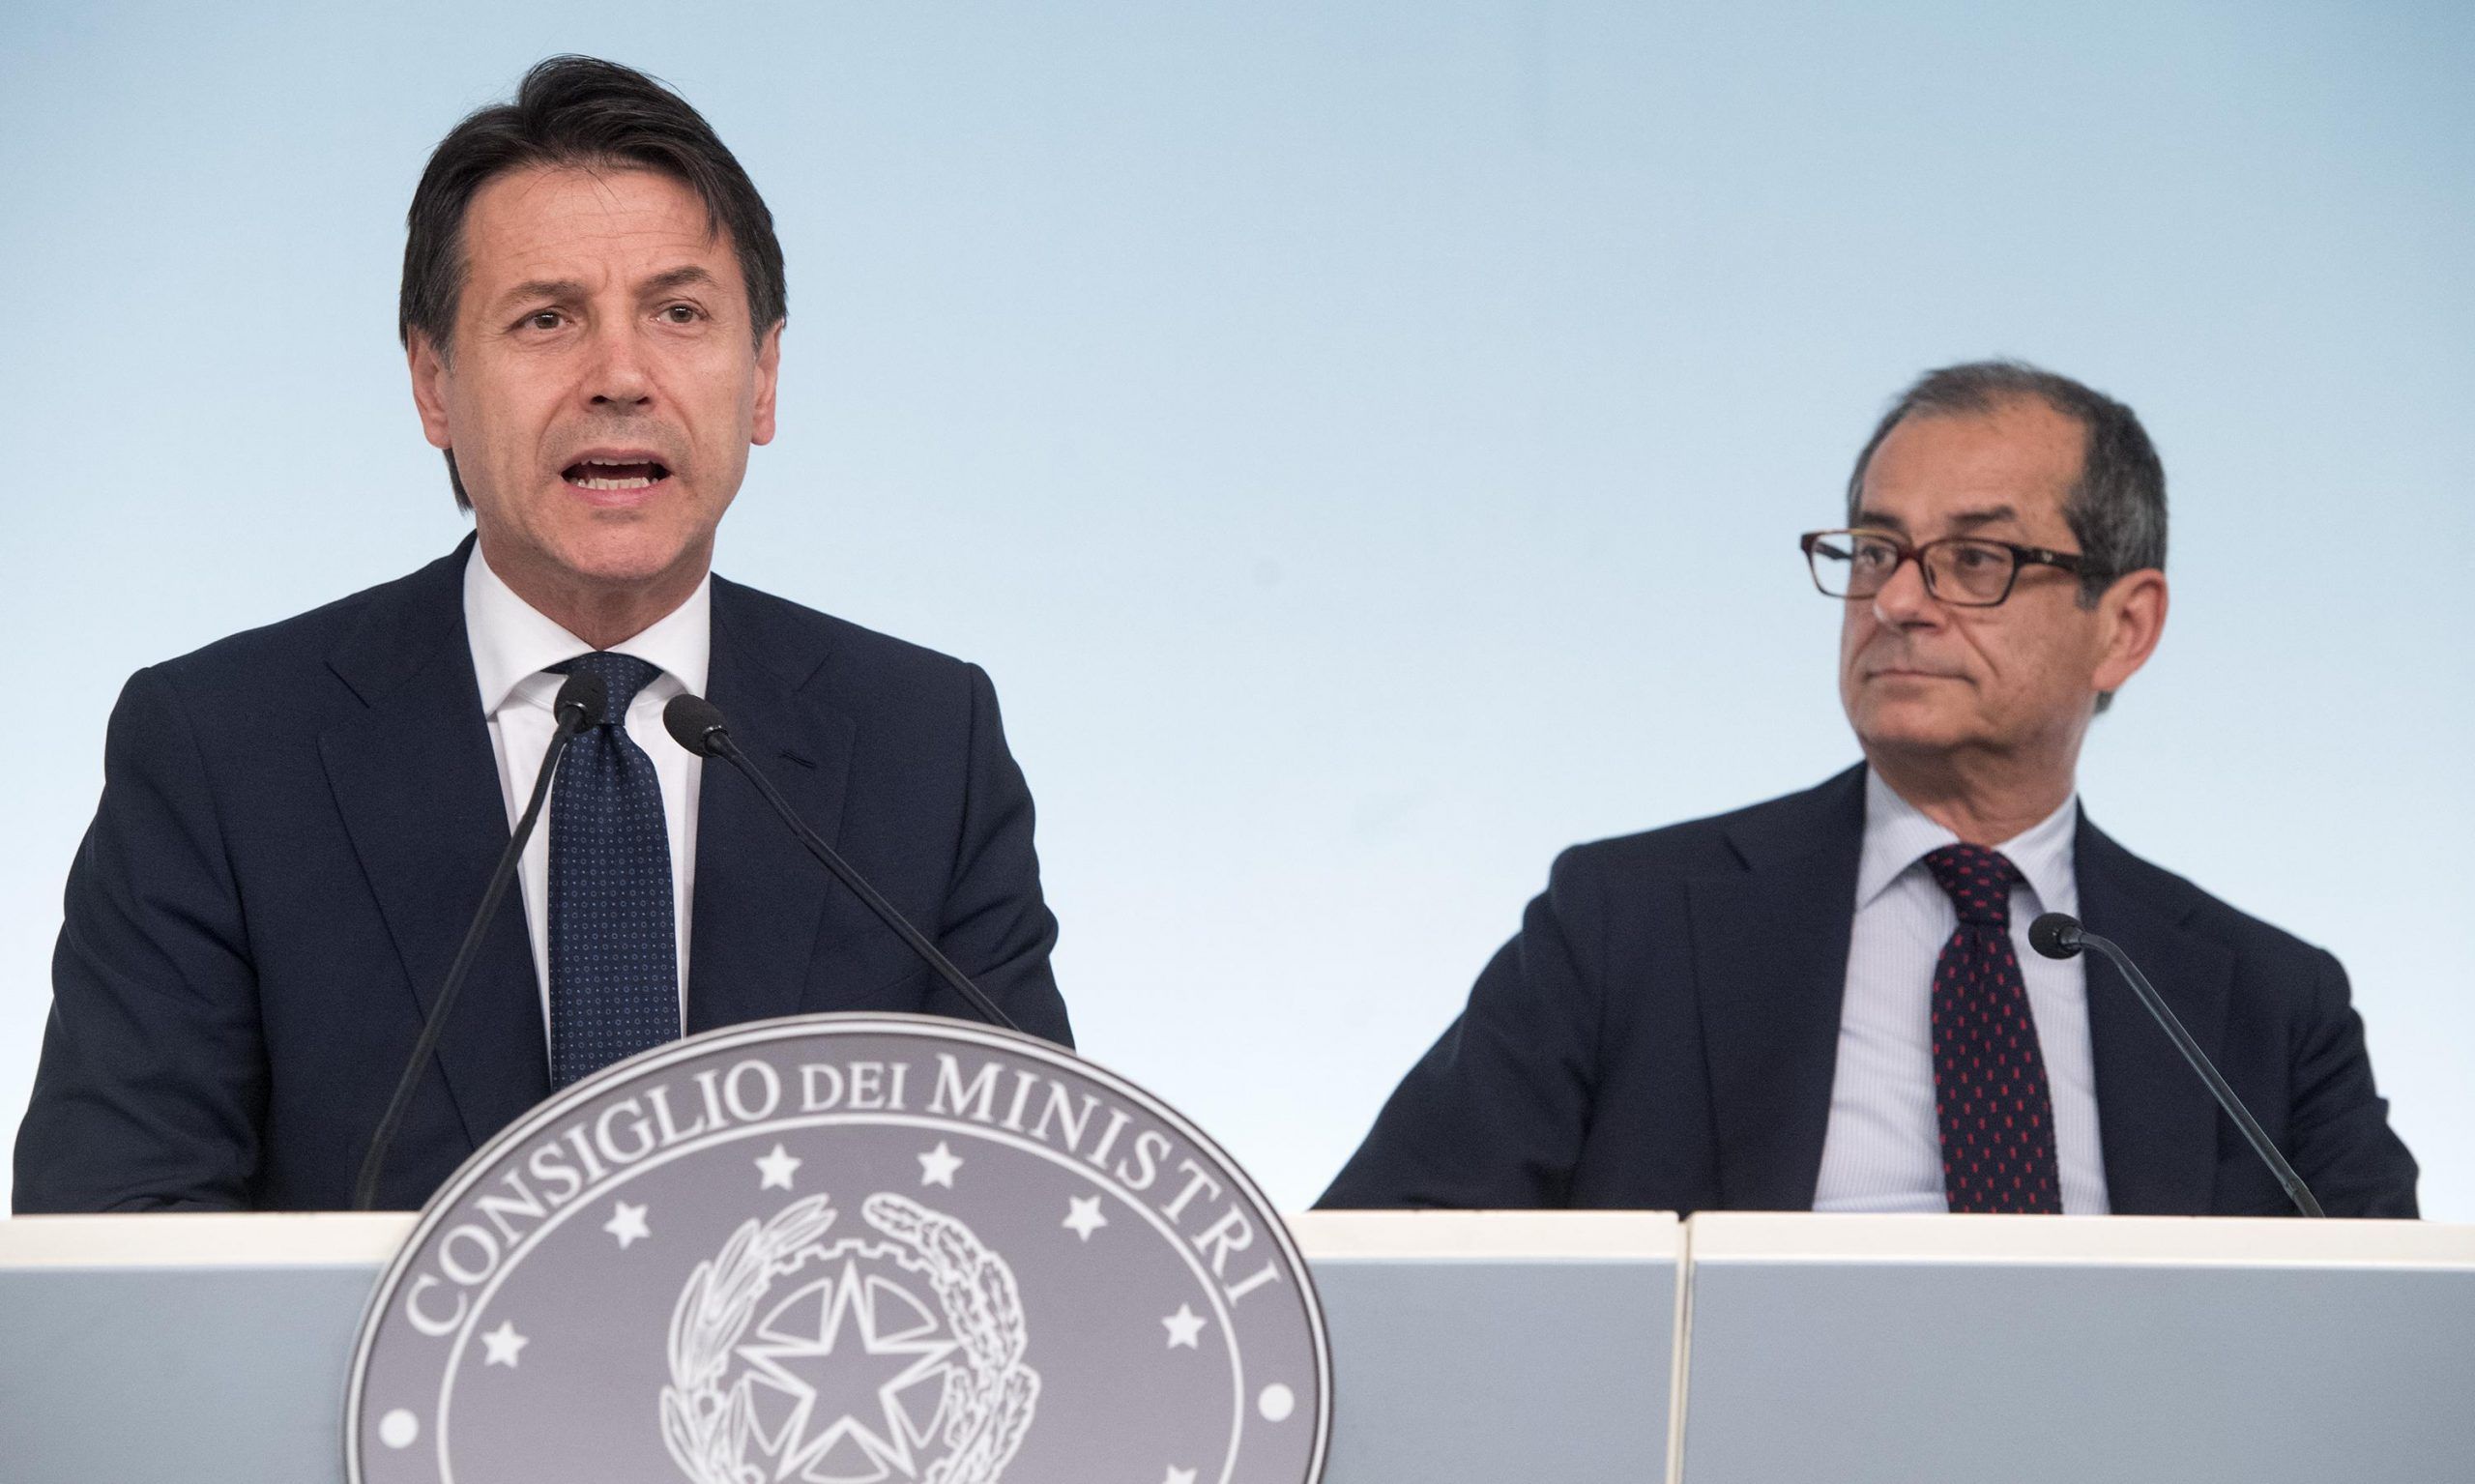 ‘Gli 80 euro di Renzi finanzieranno flat tax e sgravi fiscali’, Salvini smentisce